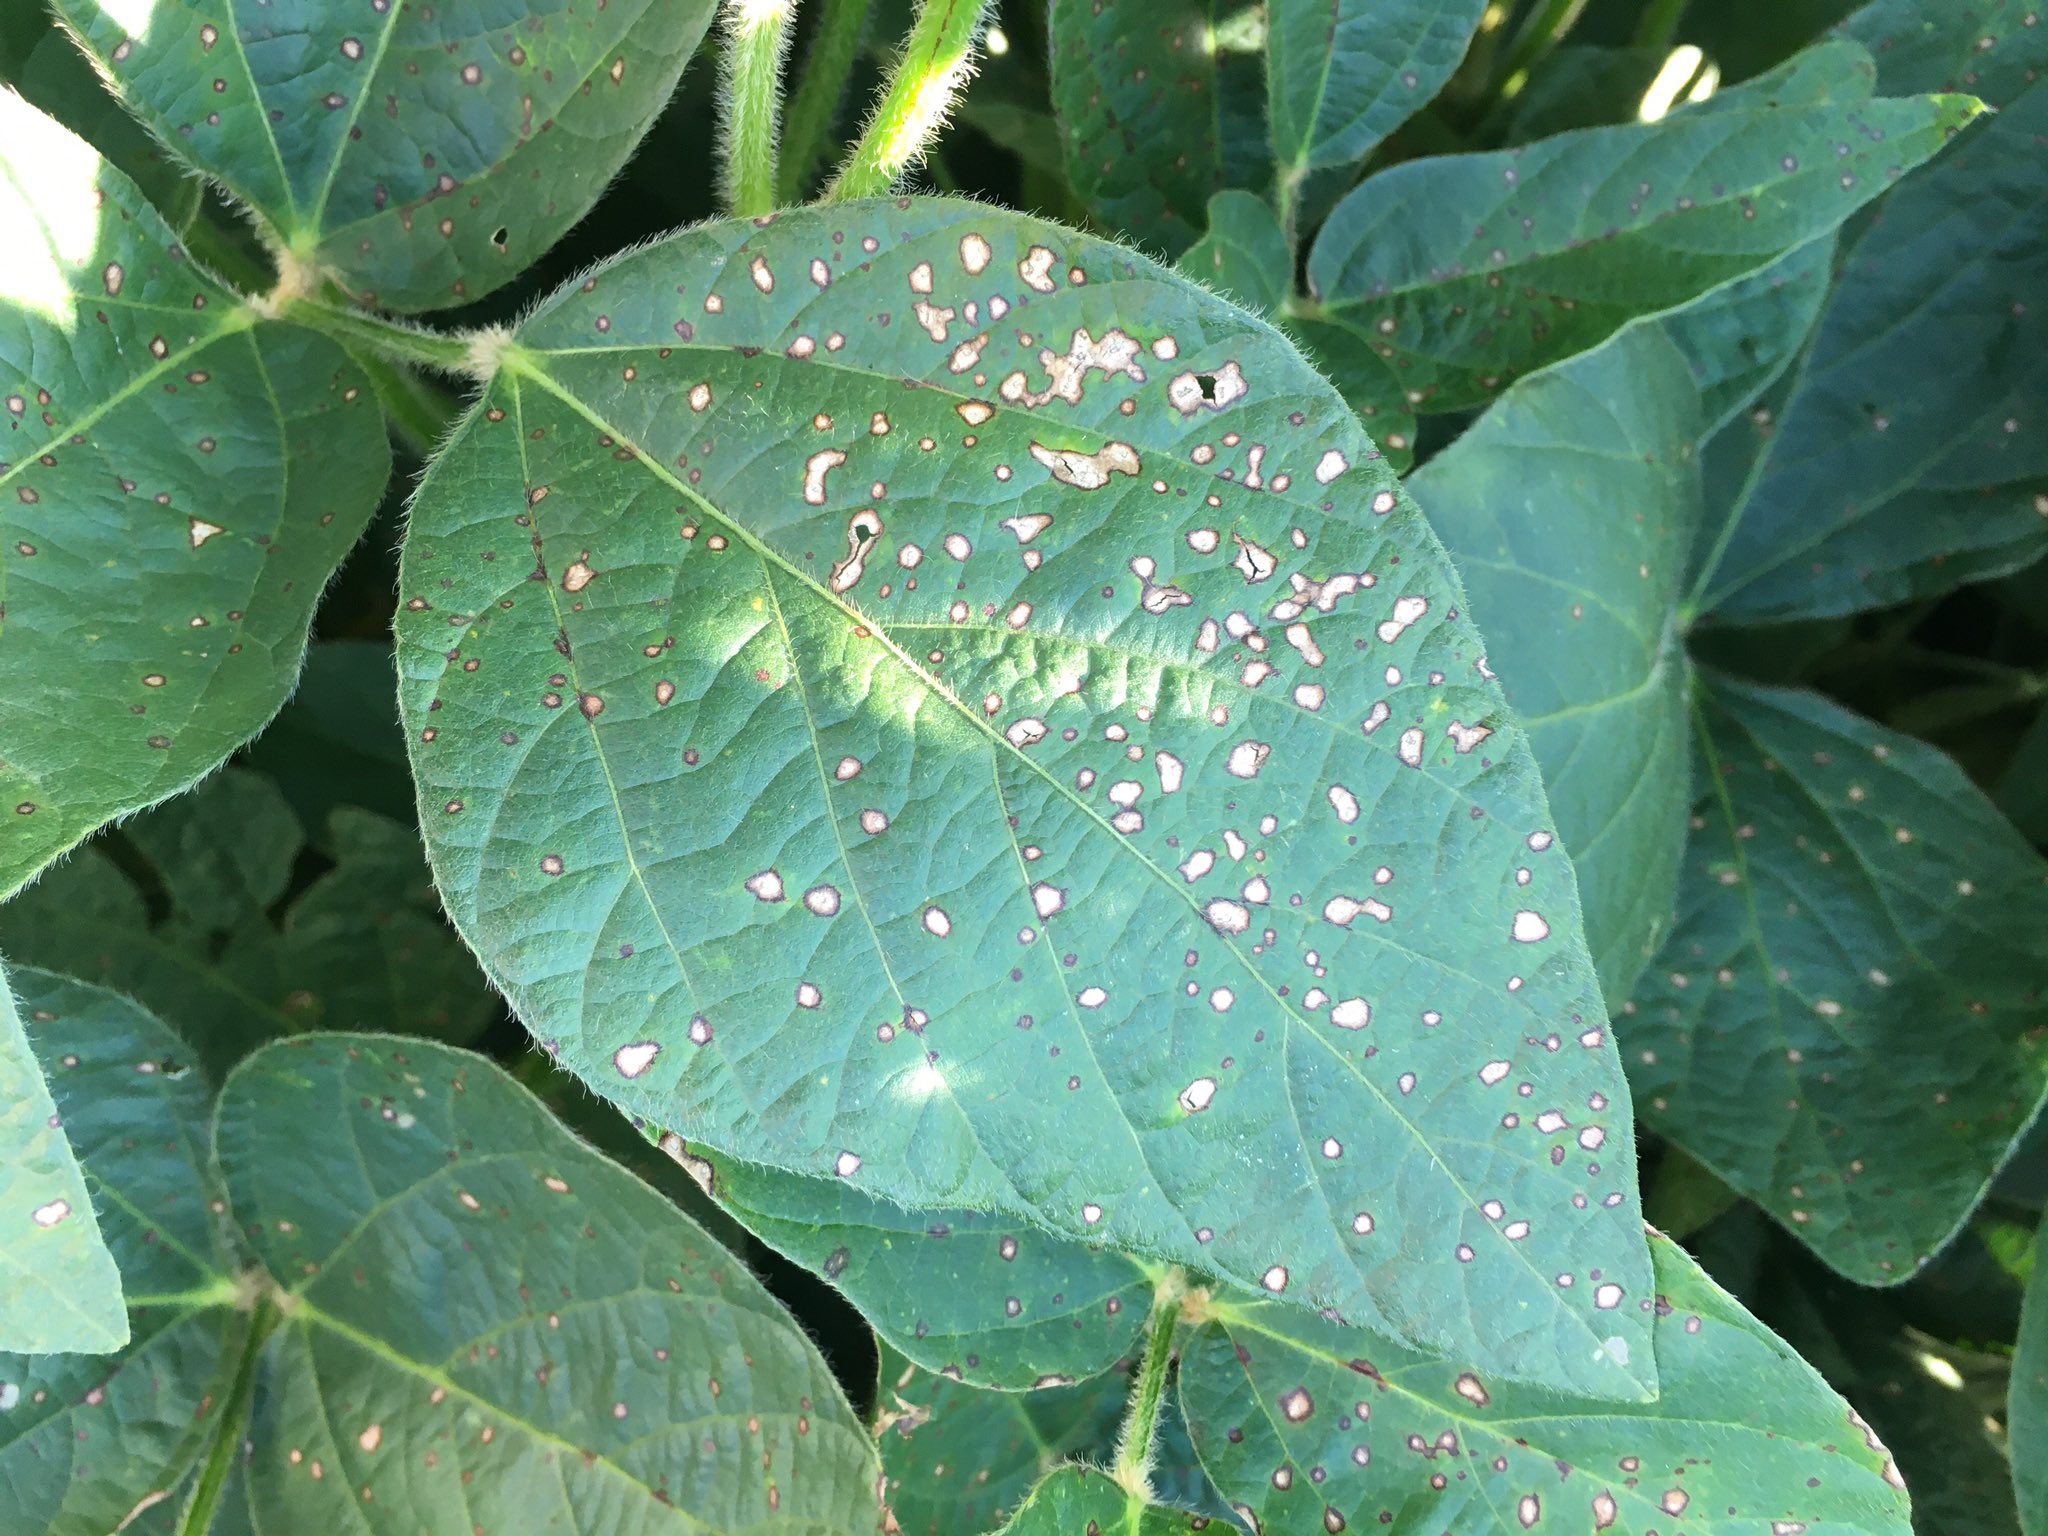 Small, dark lesions on soybean leaf.